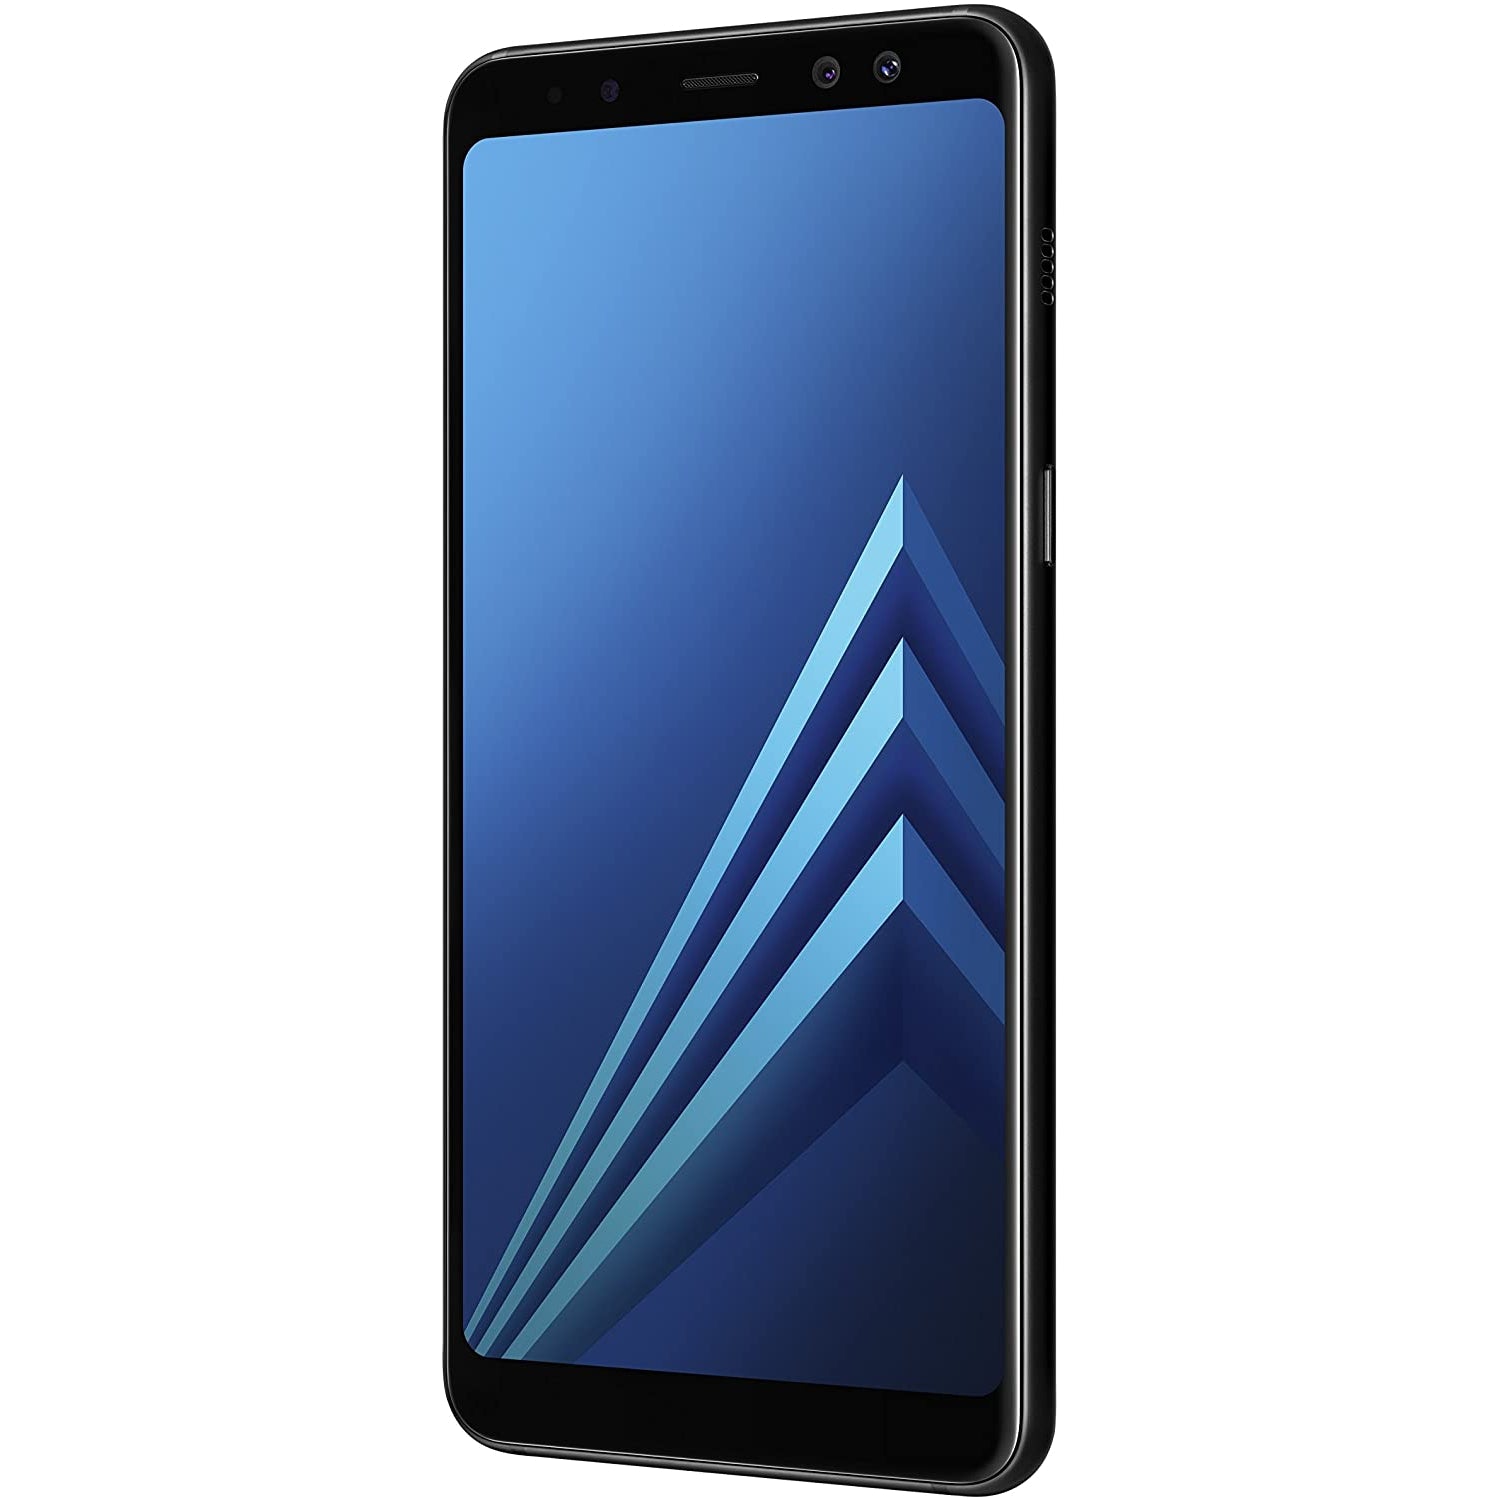 Samsung Galaxy A8 SM-A530F Smartphone, 32GB, Black (2018)